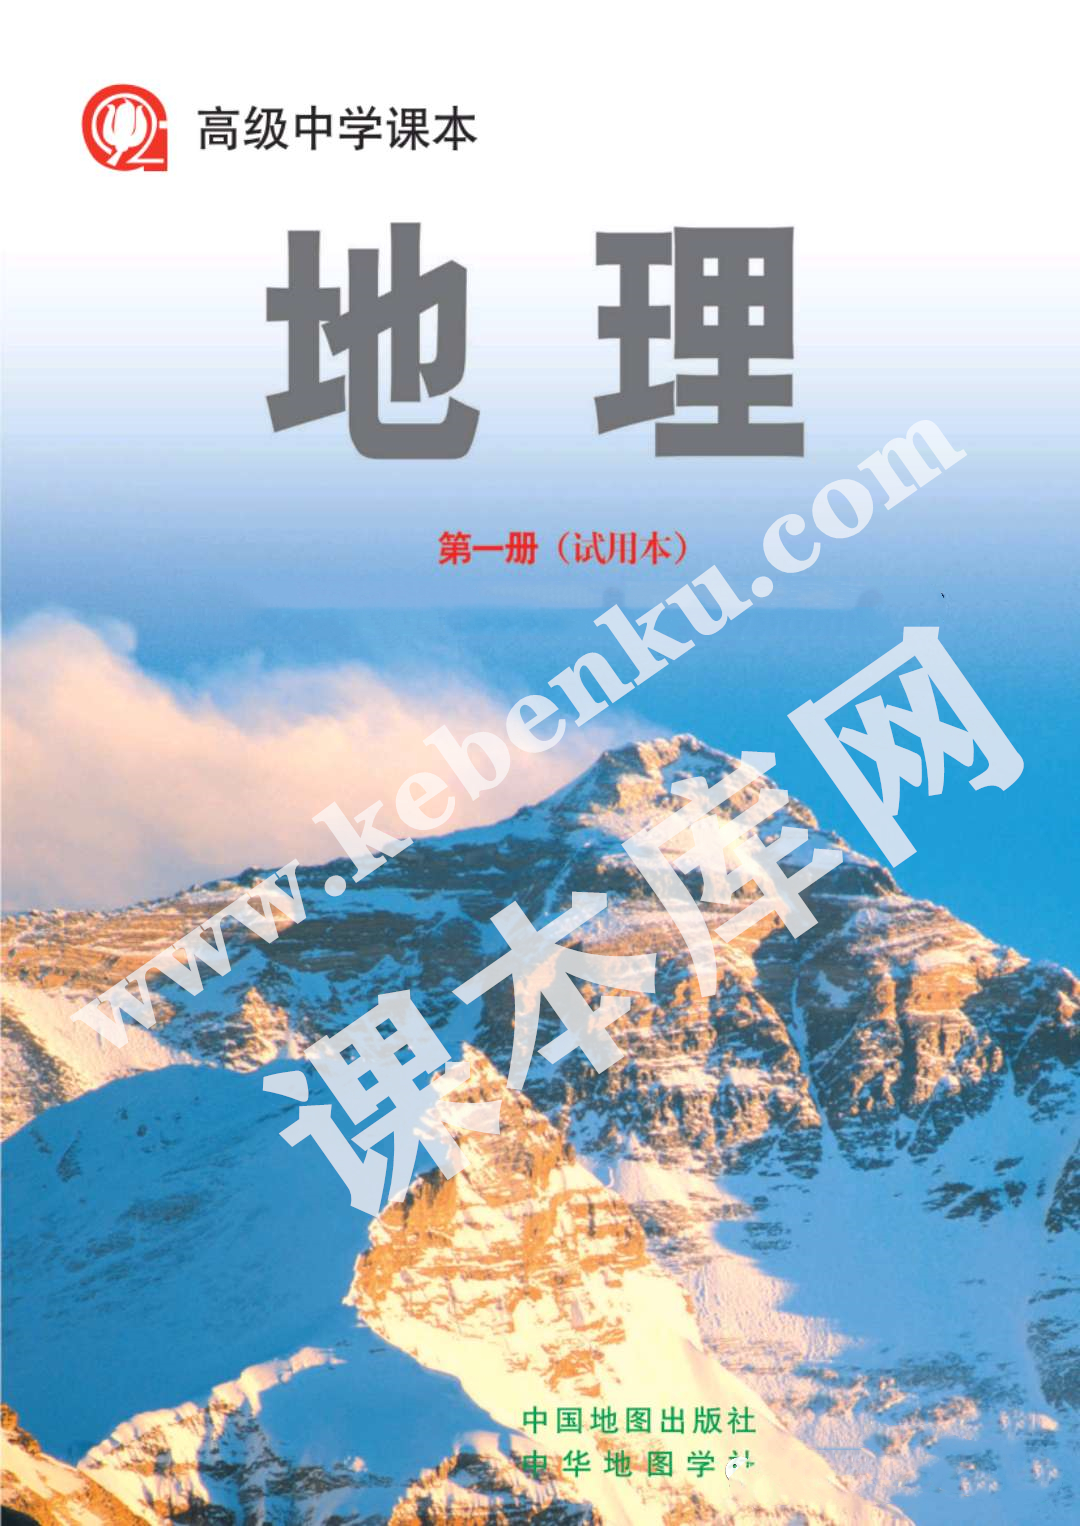 上海教育出版社高级中学课本高中地理第一册(试用本)电子课本